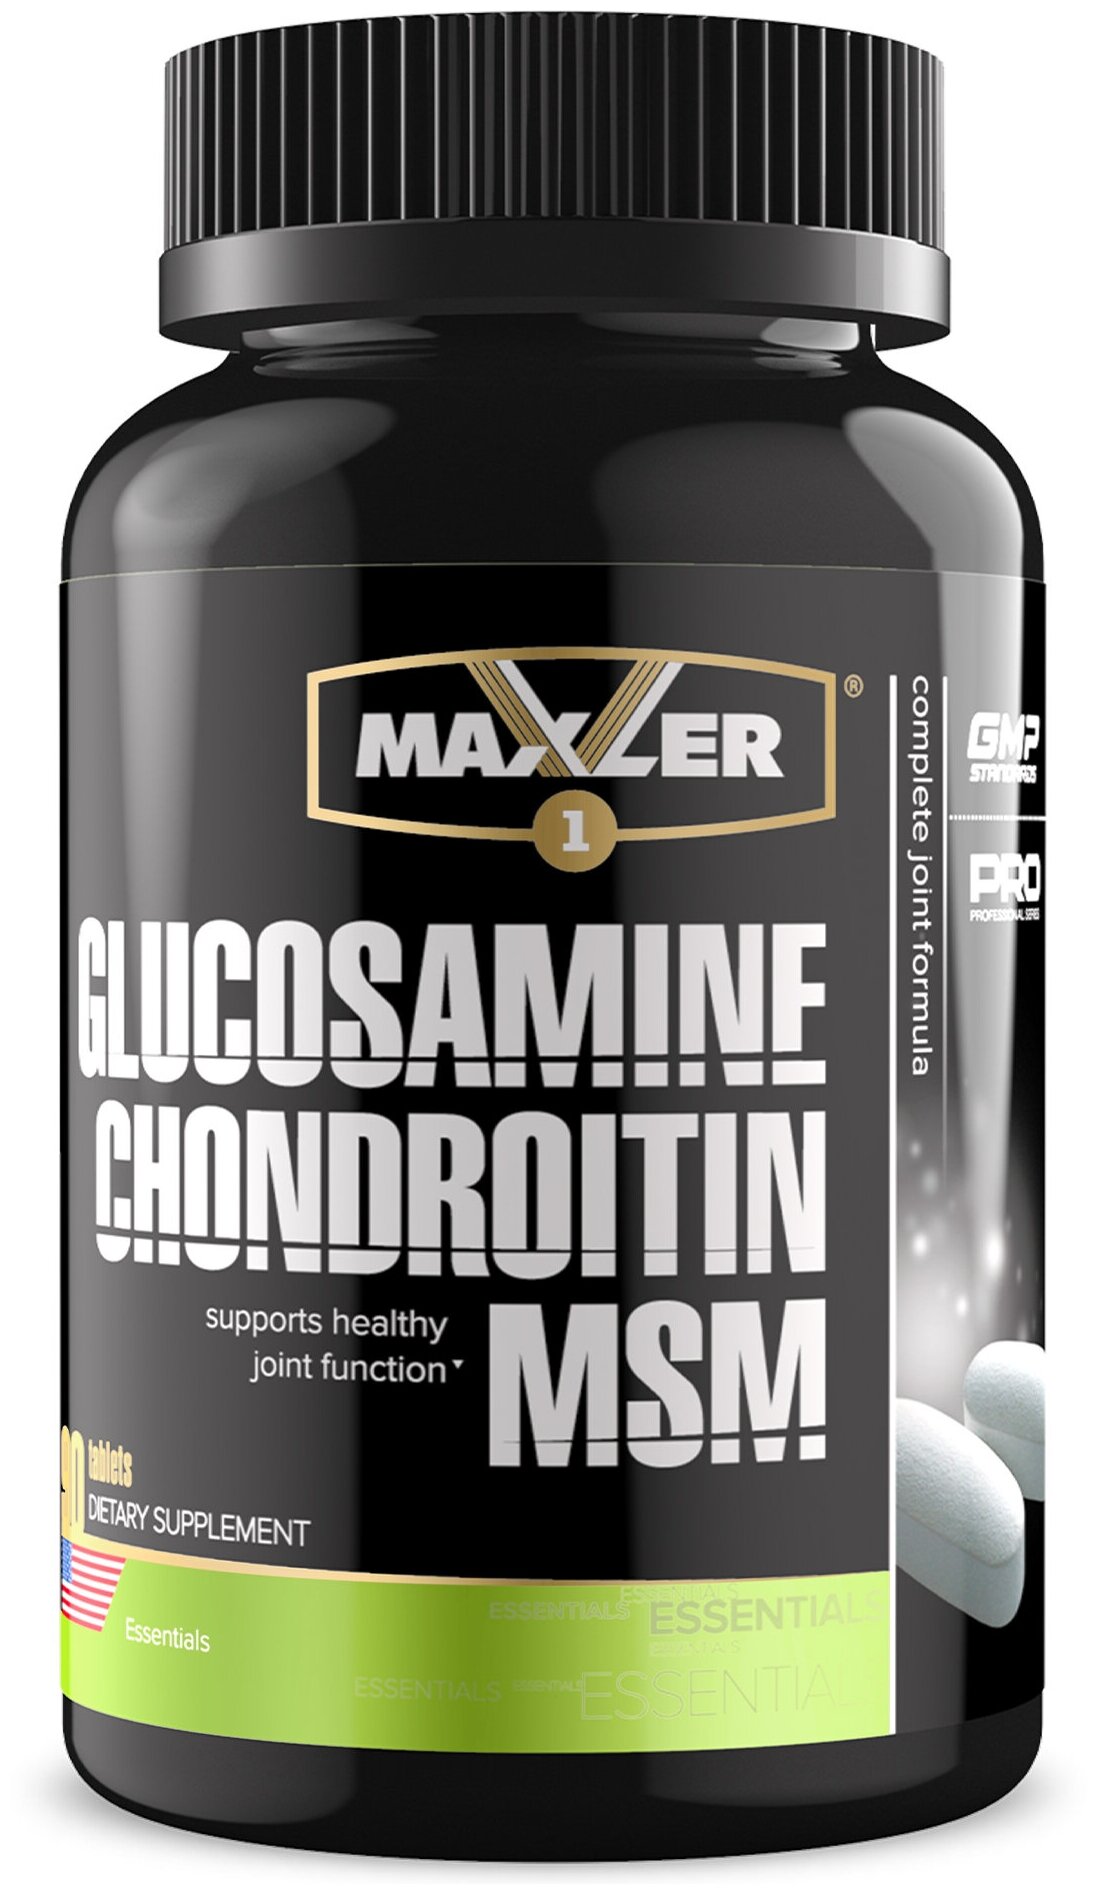 Препарат для укрепления связок и суставов Maxler Glucosamine Chondroitin MSM